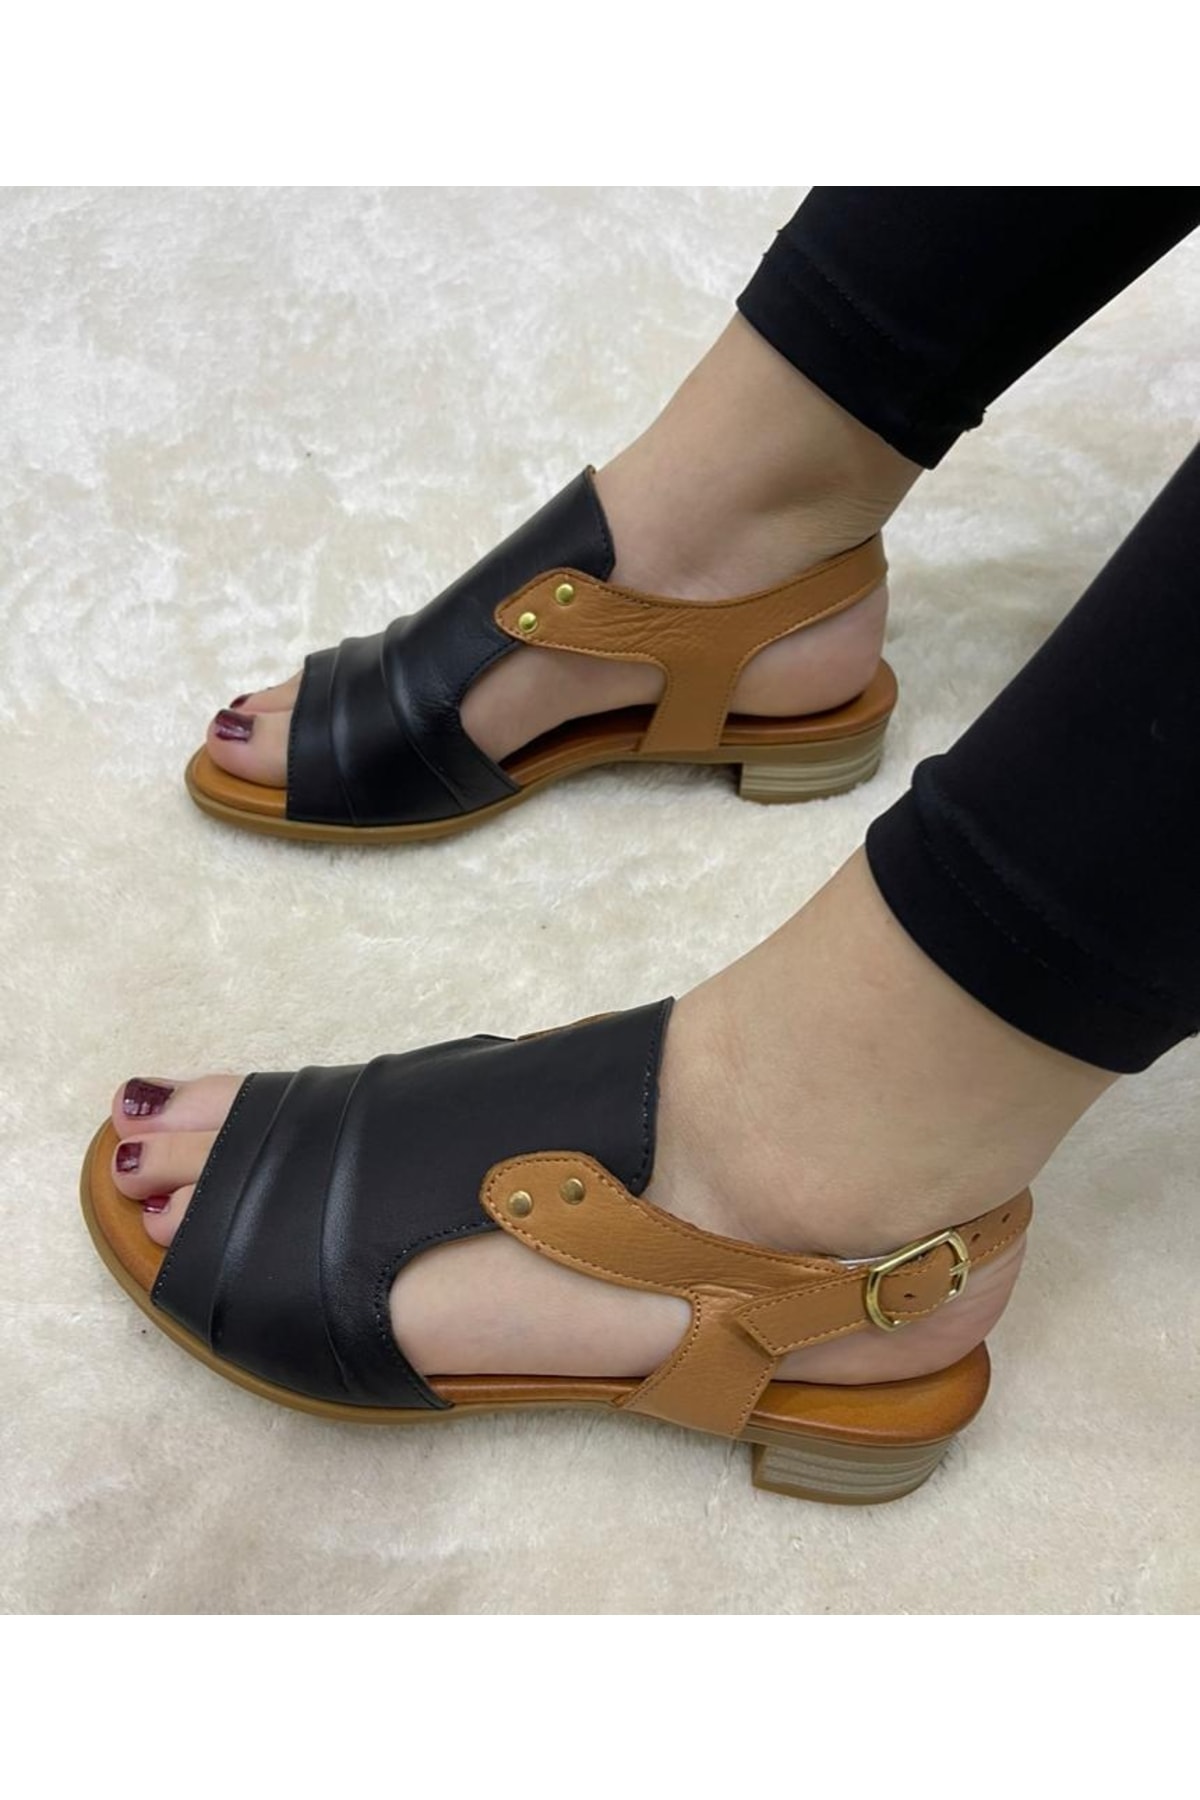 USLUFATİH Hakiki Deri Kadın Yazlık Küçük Kısa Topuk Içi Yumuşak Taban Feta Sandalet Ayakkabı